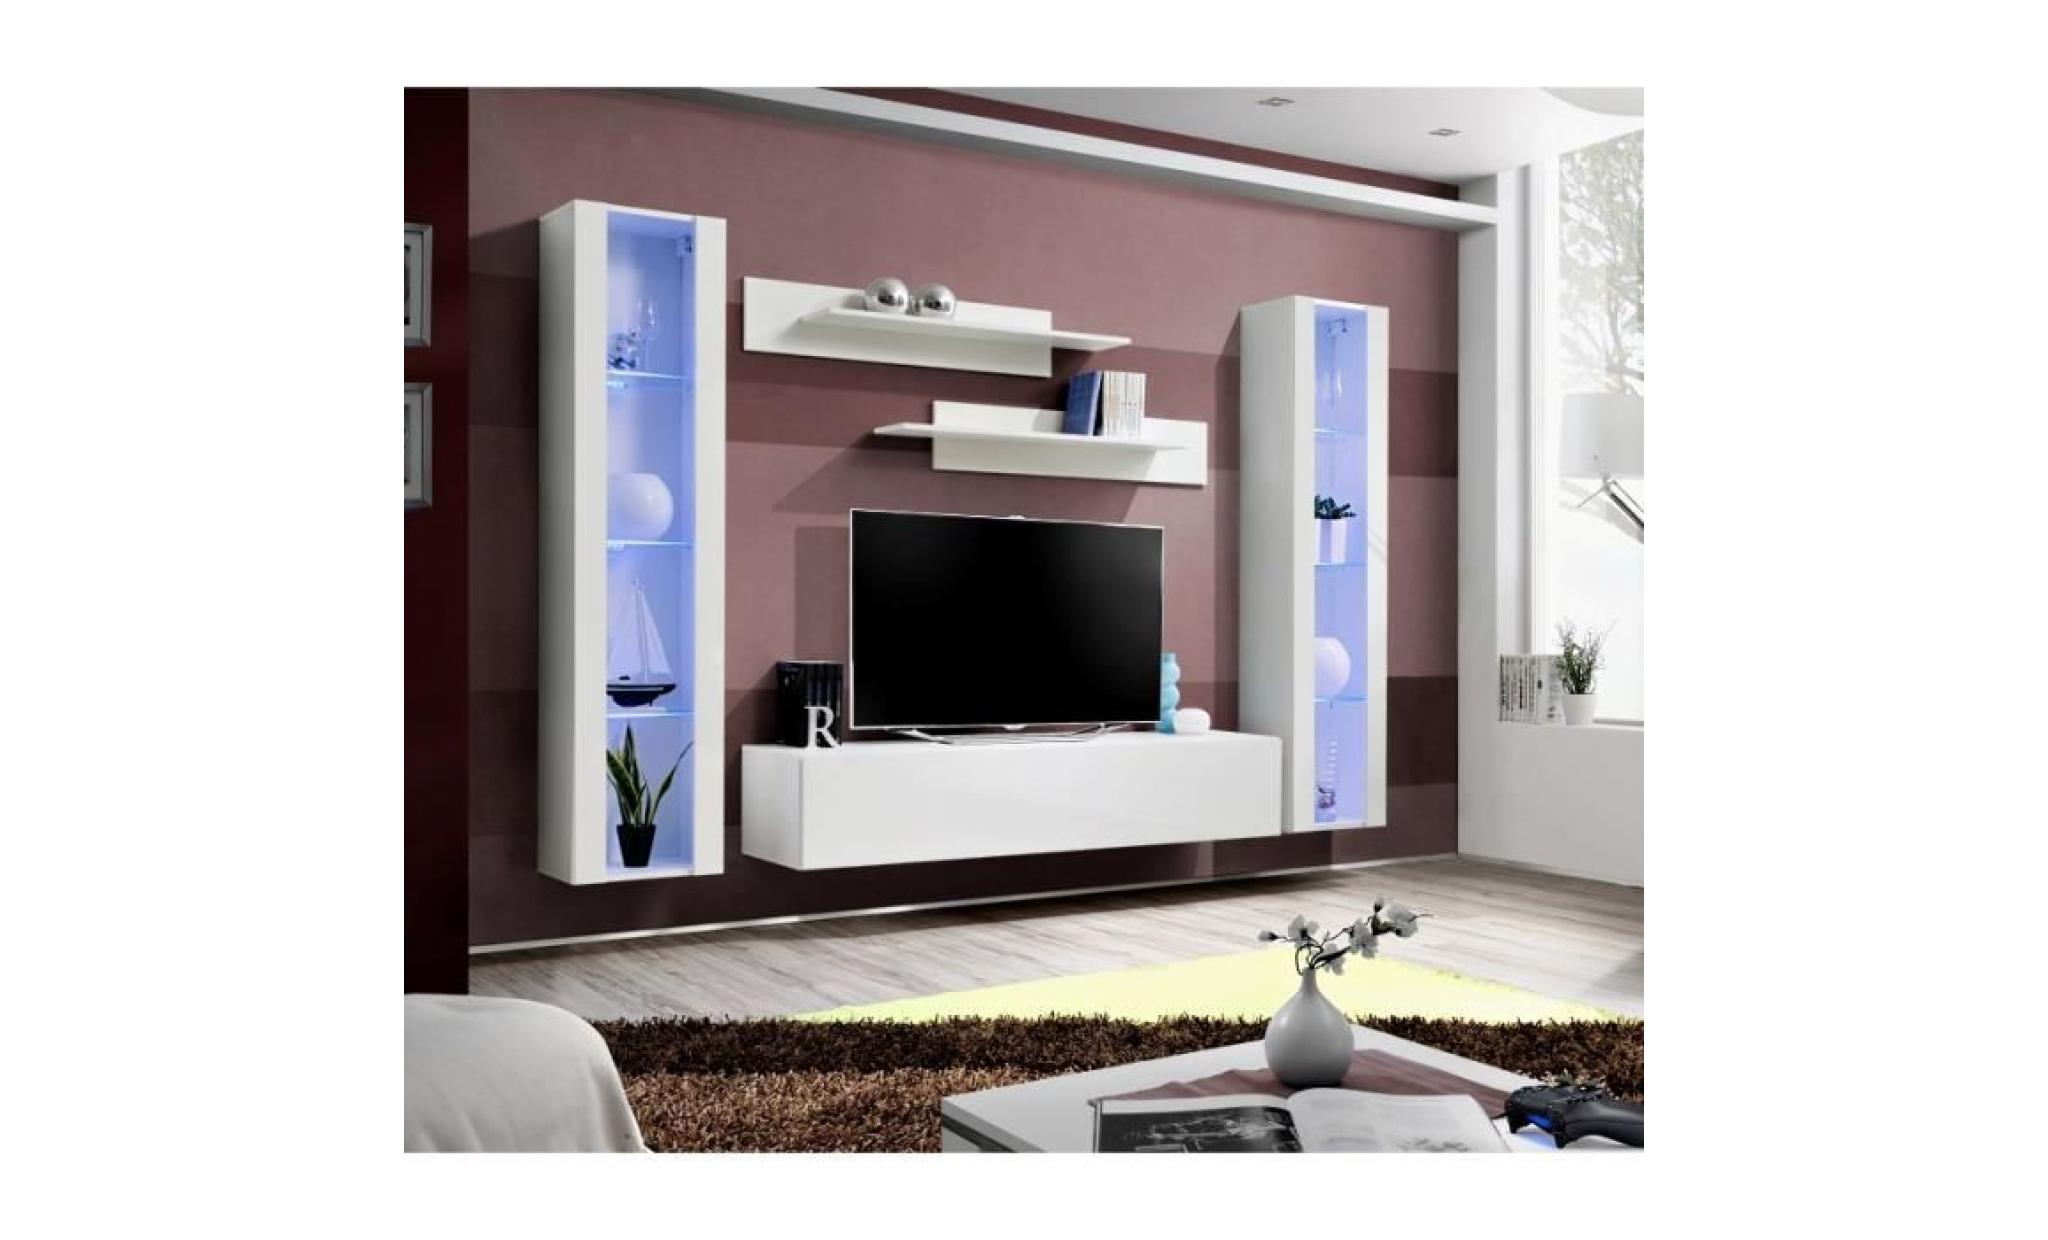 price factory   meuble tv fly a2 design, coloris blanc brillant + led. meuble suspendu moderne et tendance pour votre salon.